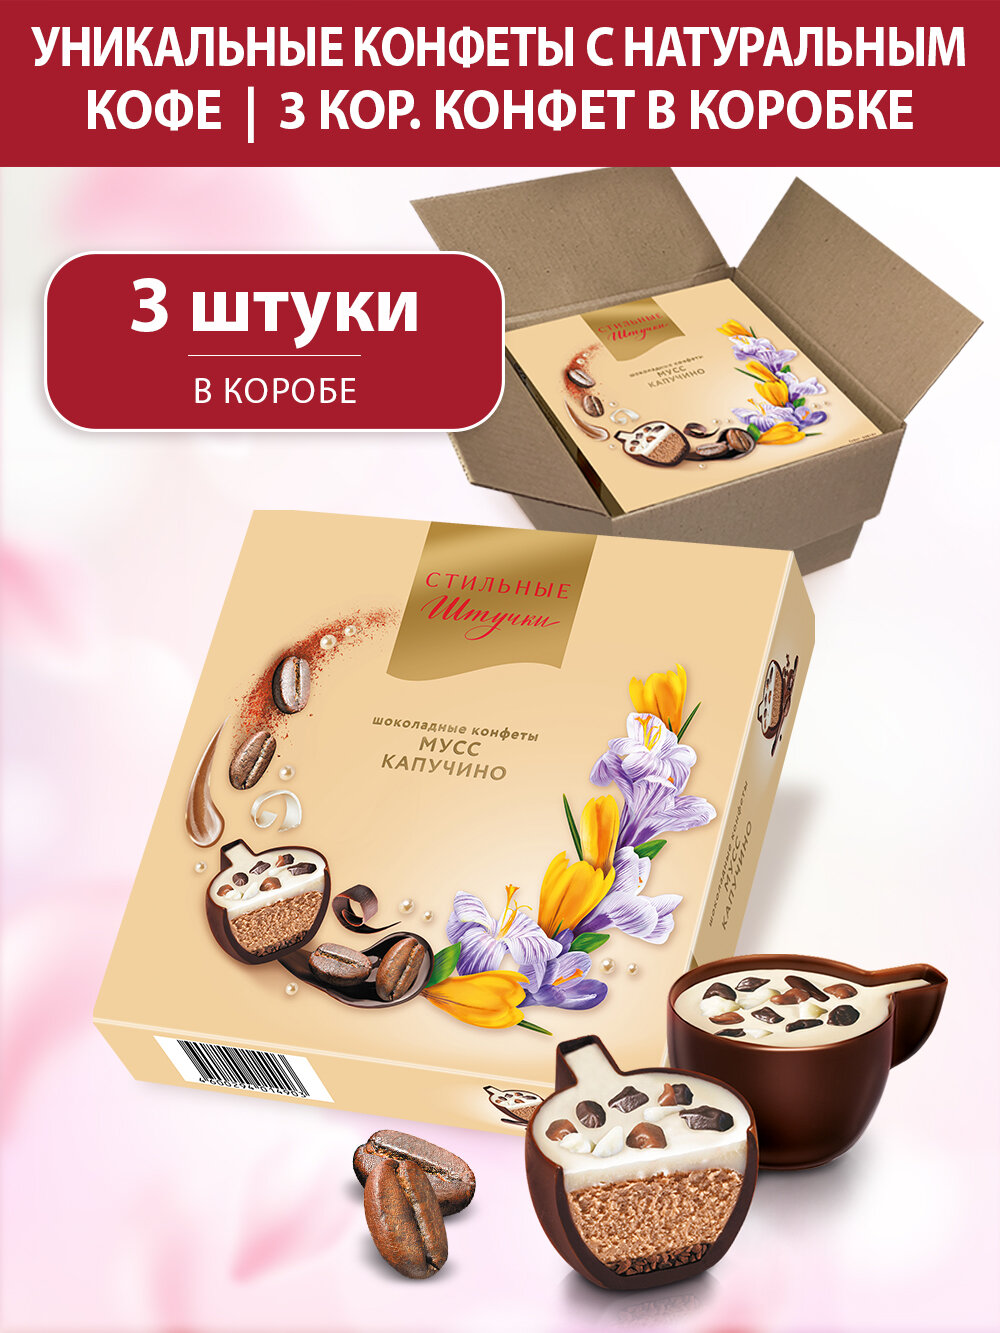 Конфеты шоколадные Стильные штучки мусс капучино подарочные в весенней коробке с символикой 8 марта, 3 шт по 104 г